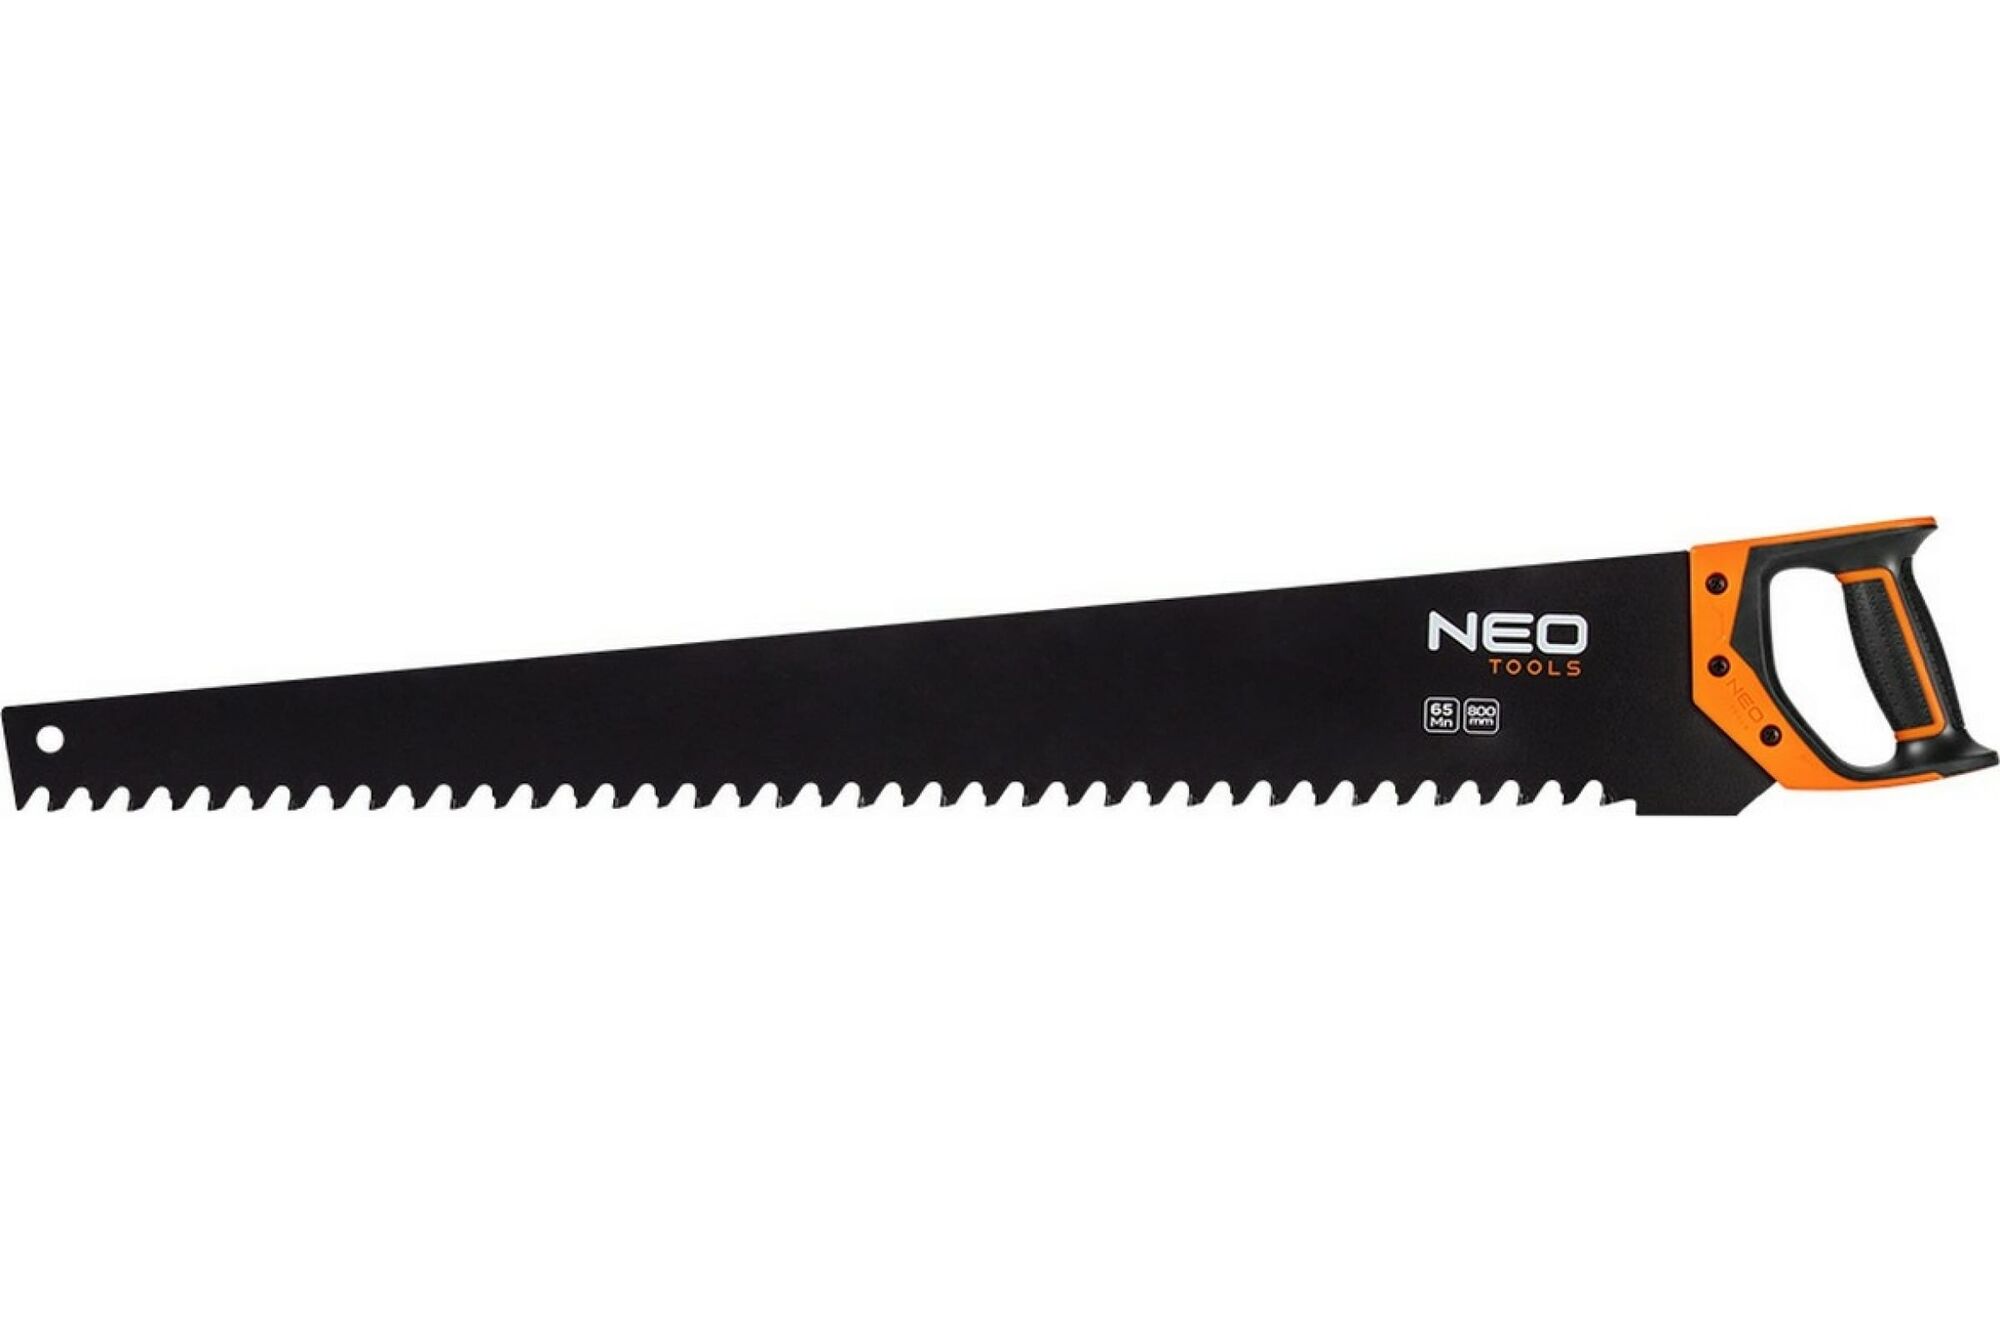 Пила для блоков по газобетону NEO Tools 800 мм, 23 зуба, с накладками widia 41-201